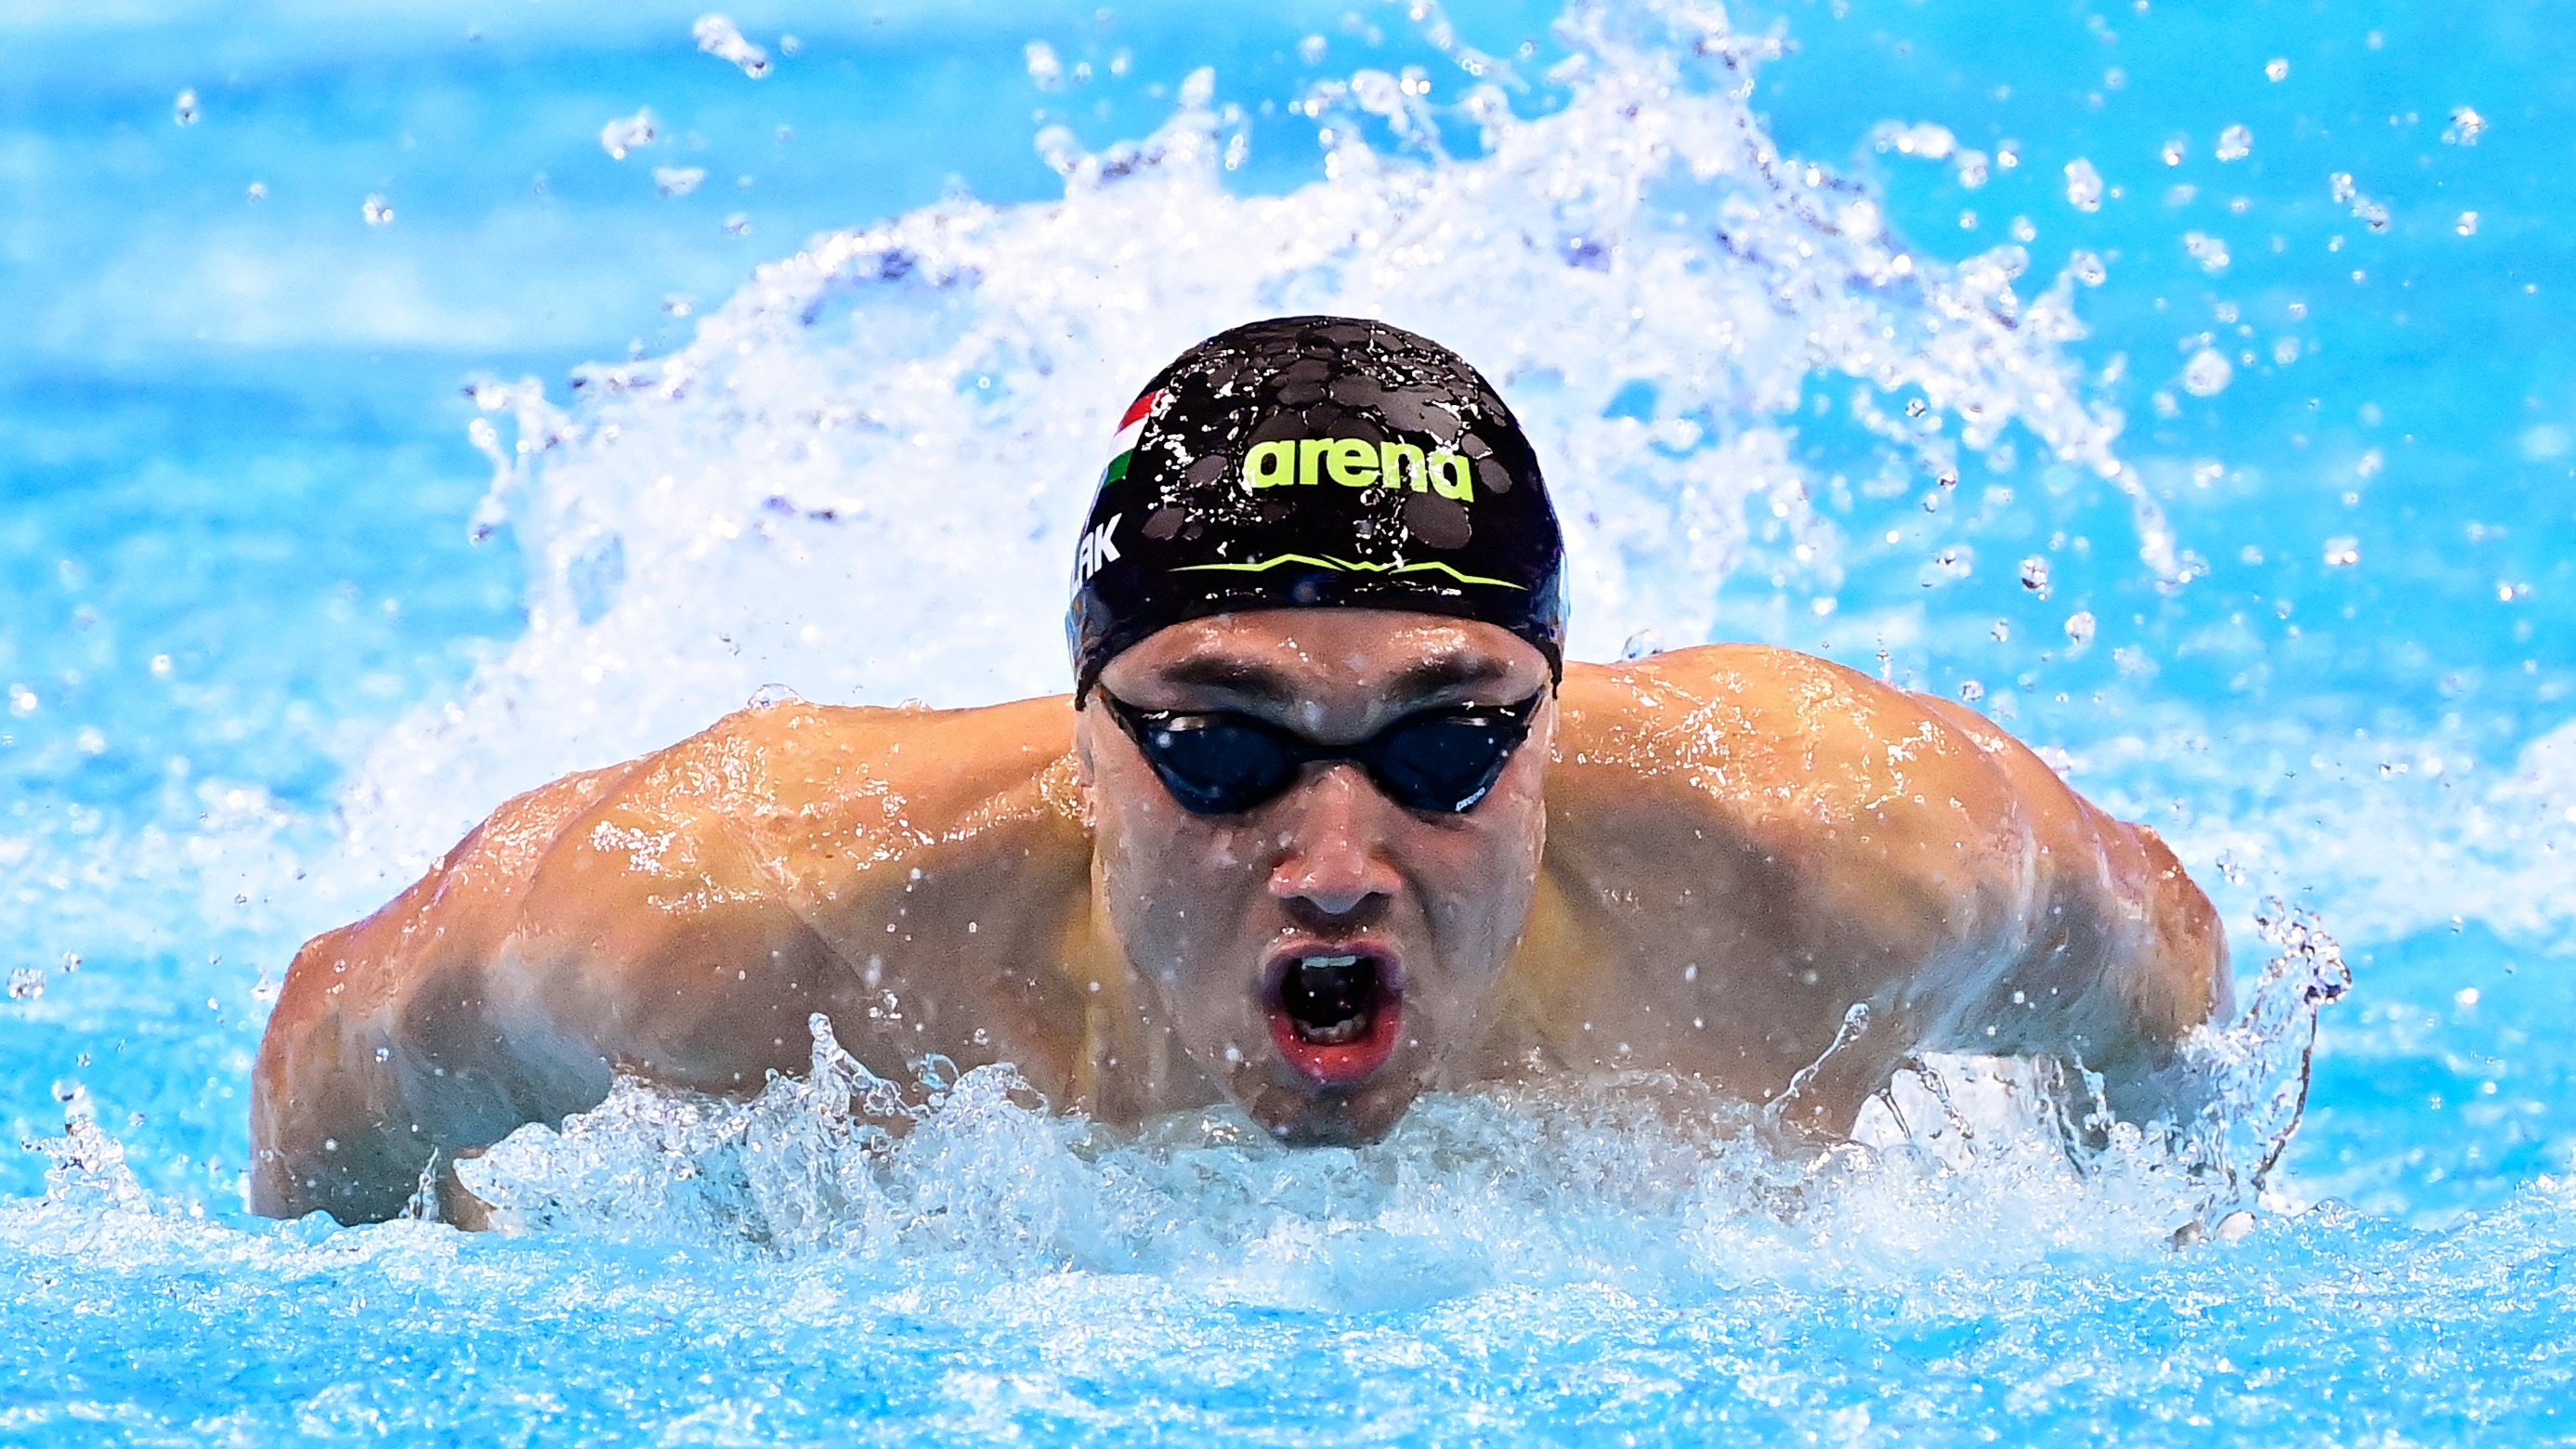 Milák káprázatos úszással, Eb-csúccsal nyert újabb aranyérmet